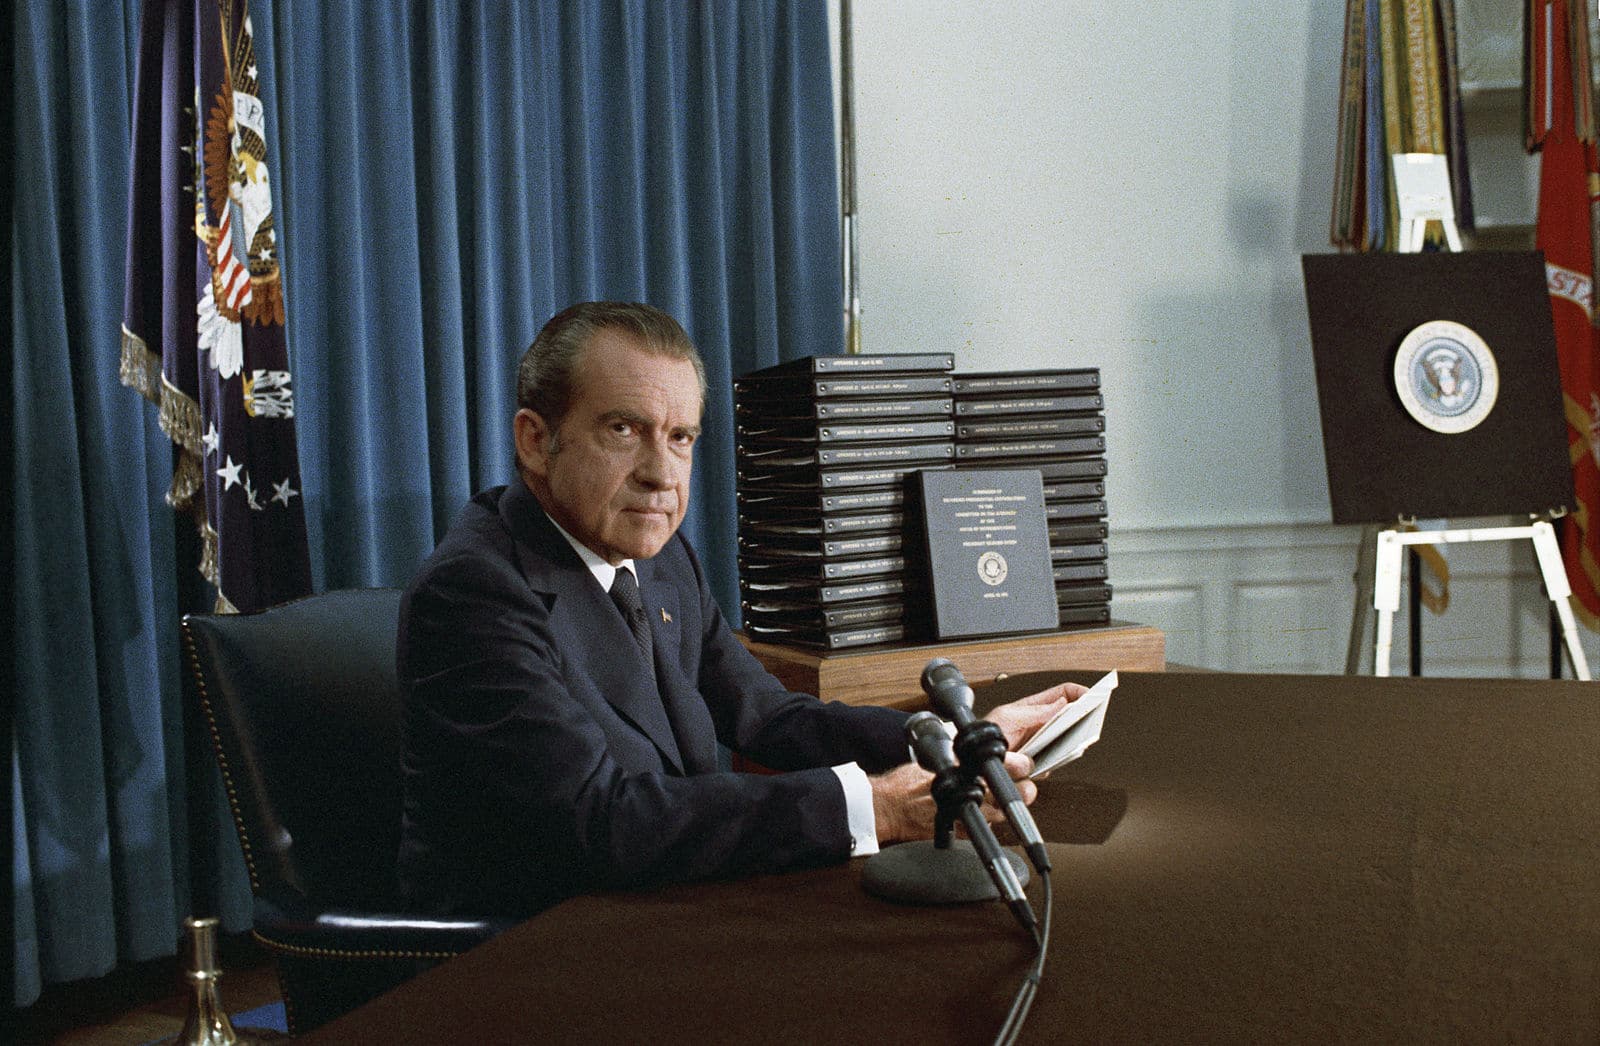 Nixon annonçant la publication des enregistrements du Watergate, 29 avril 1974. (C) Wikipedia